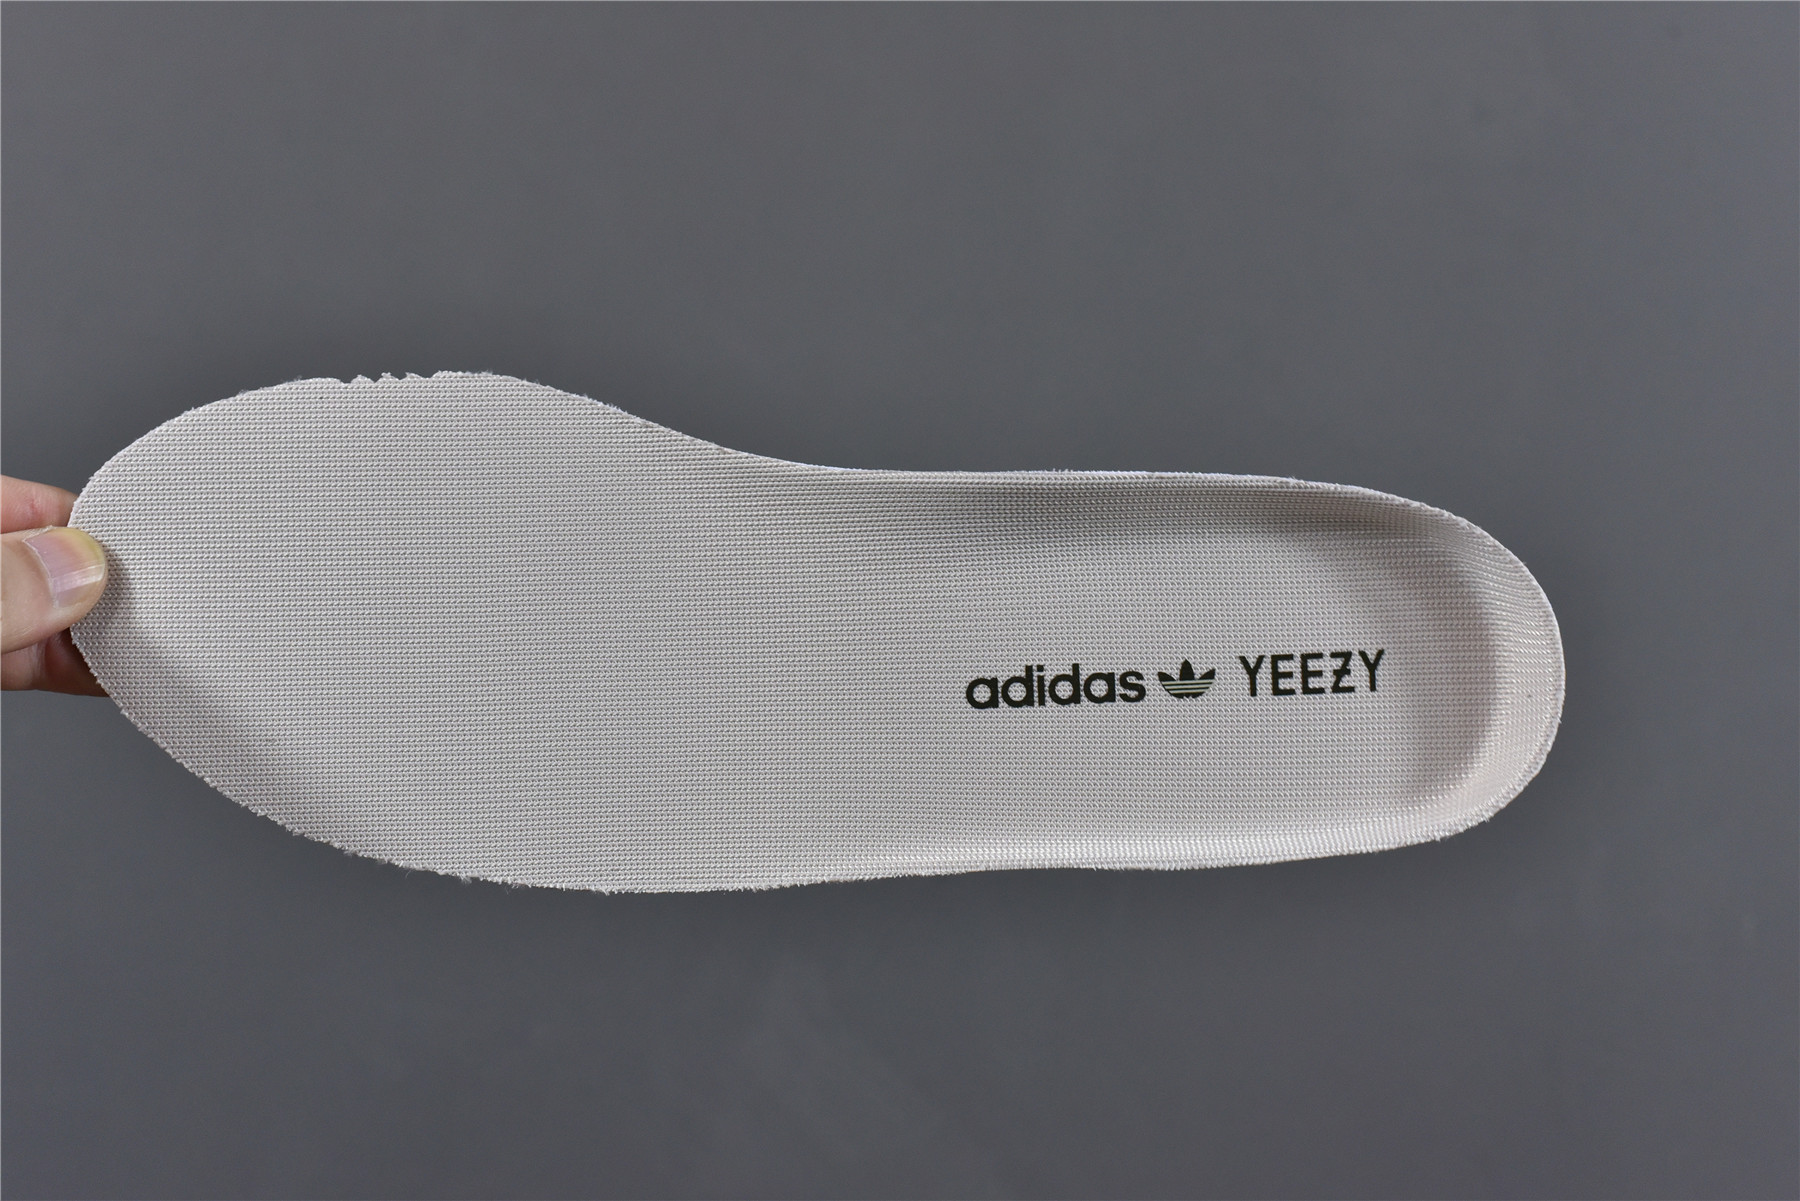 Adidas Yeezy Boost 350 V2 Zyon Fz1267_kickbulk 33 - www.kickbulk.cc